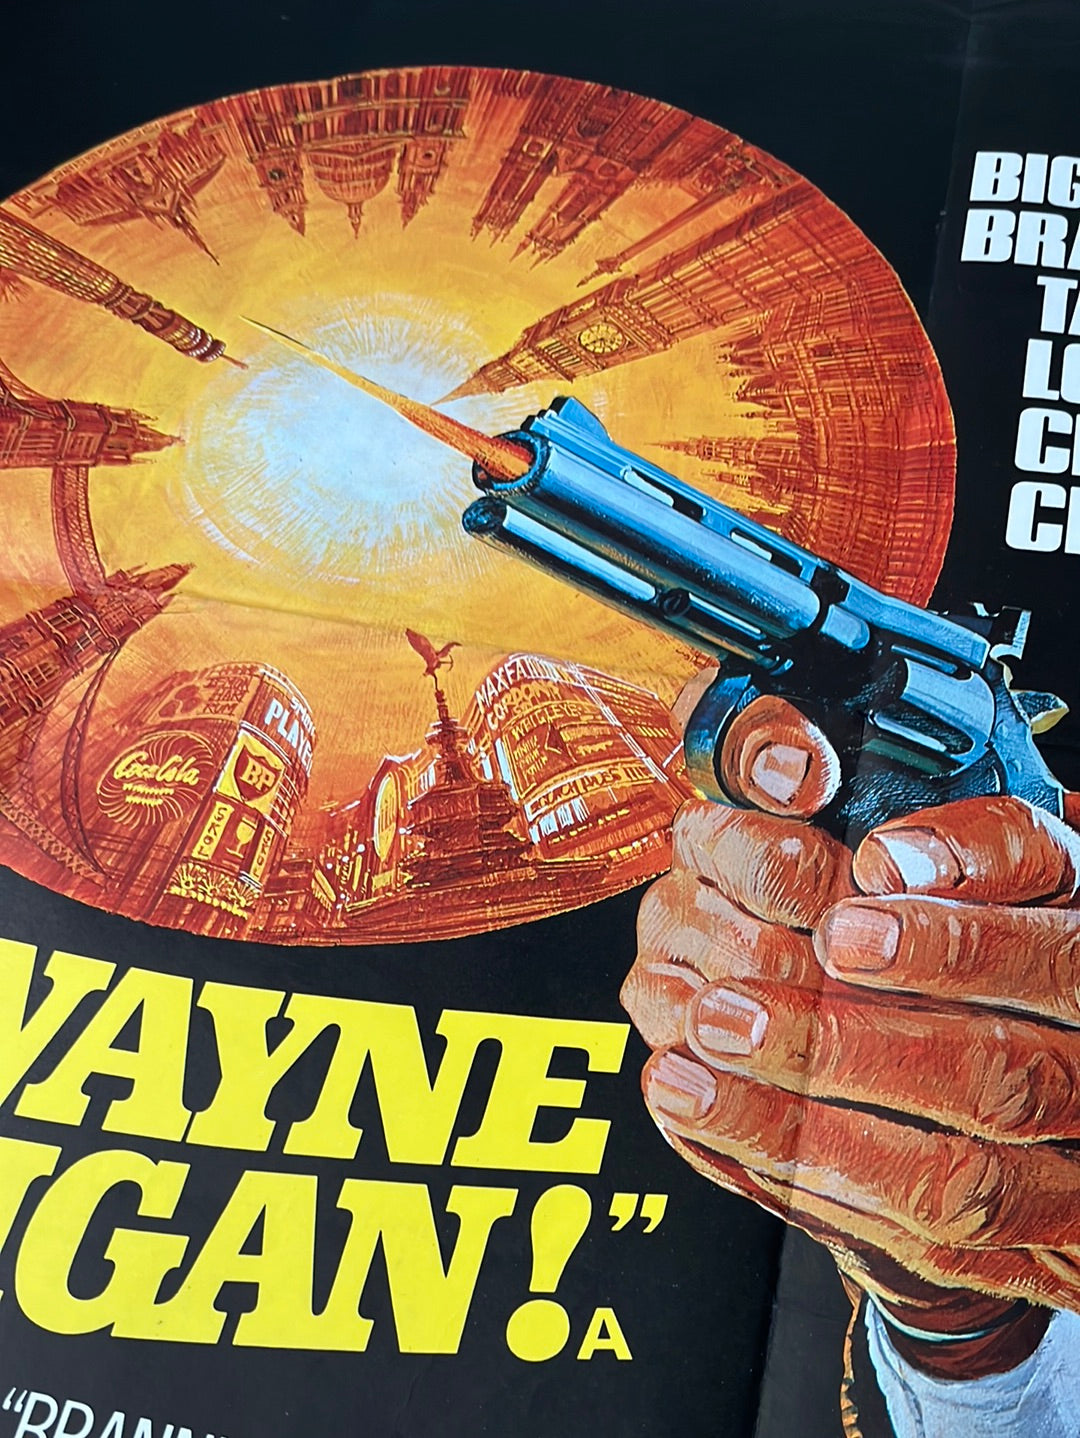 Brannigan (1975) Original UK Quad Cinema Poster